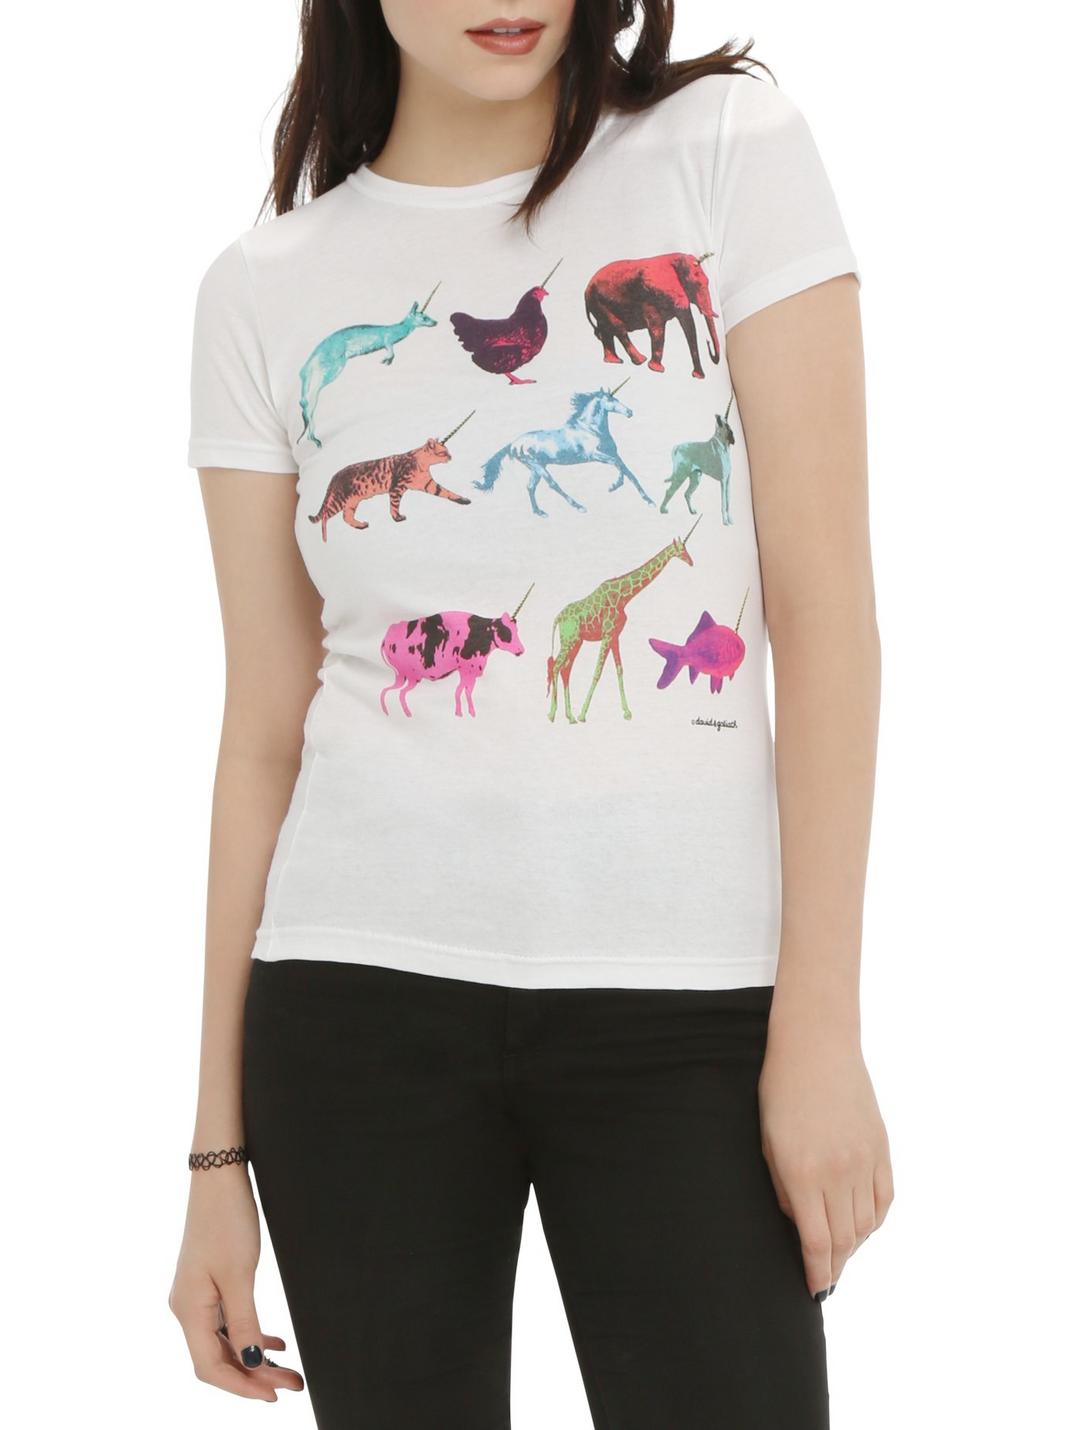 David & Goliath Unicorns Girls T-Shirt, WHITE, hi-res